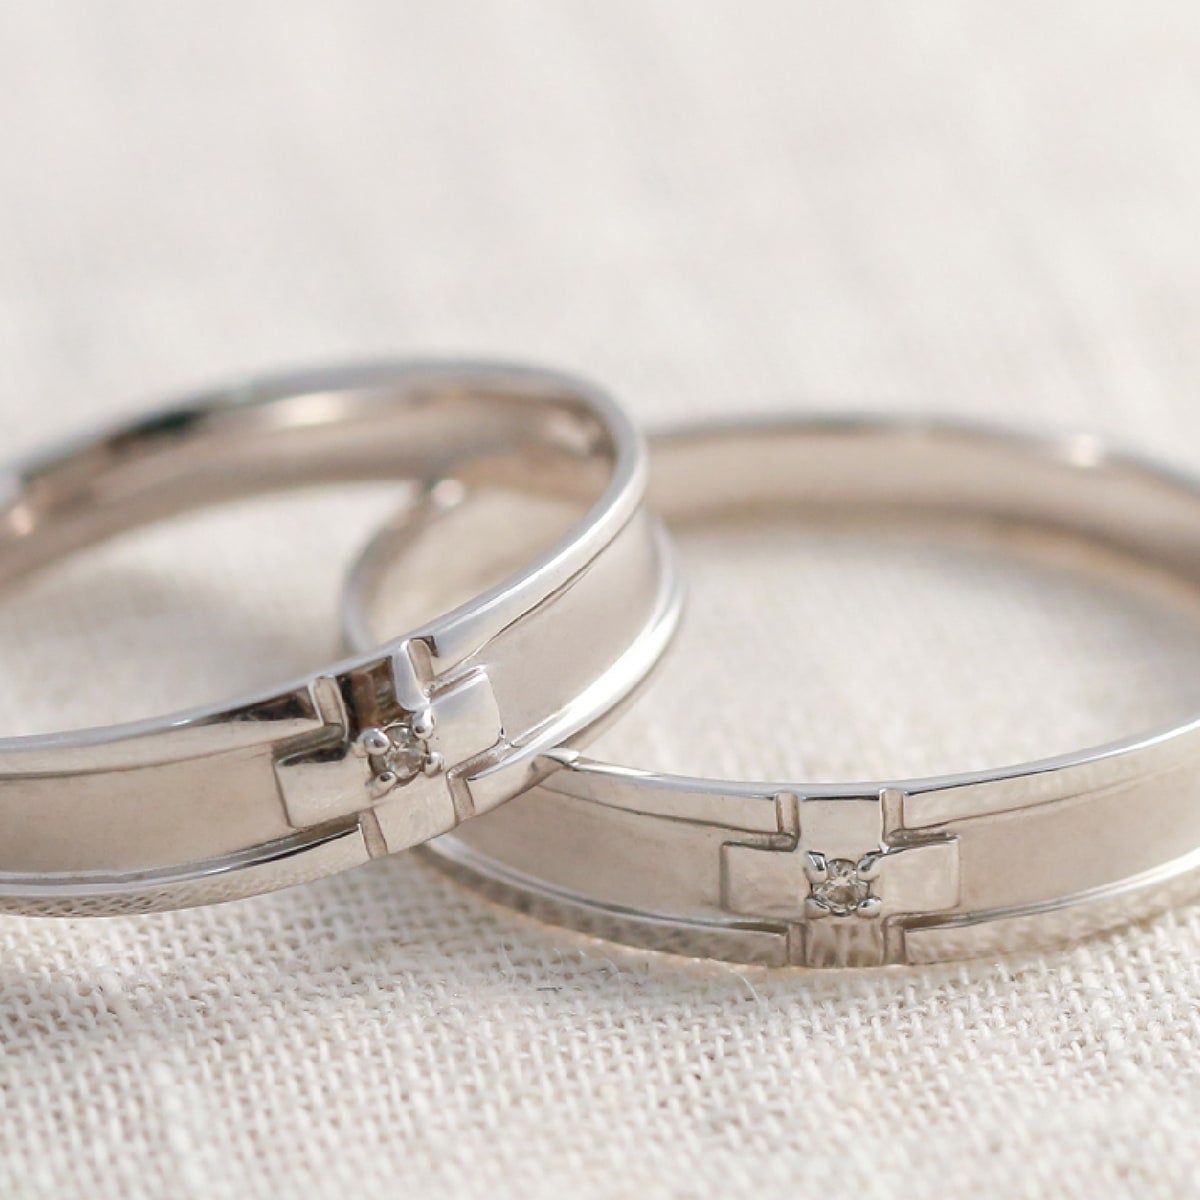 結婚指輪 ダイヤモンド 2本セット | dr4734dr4734